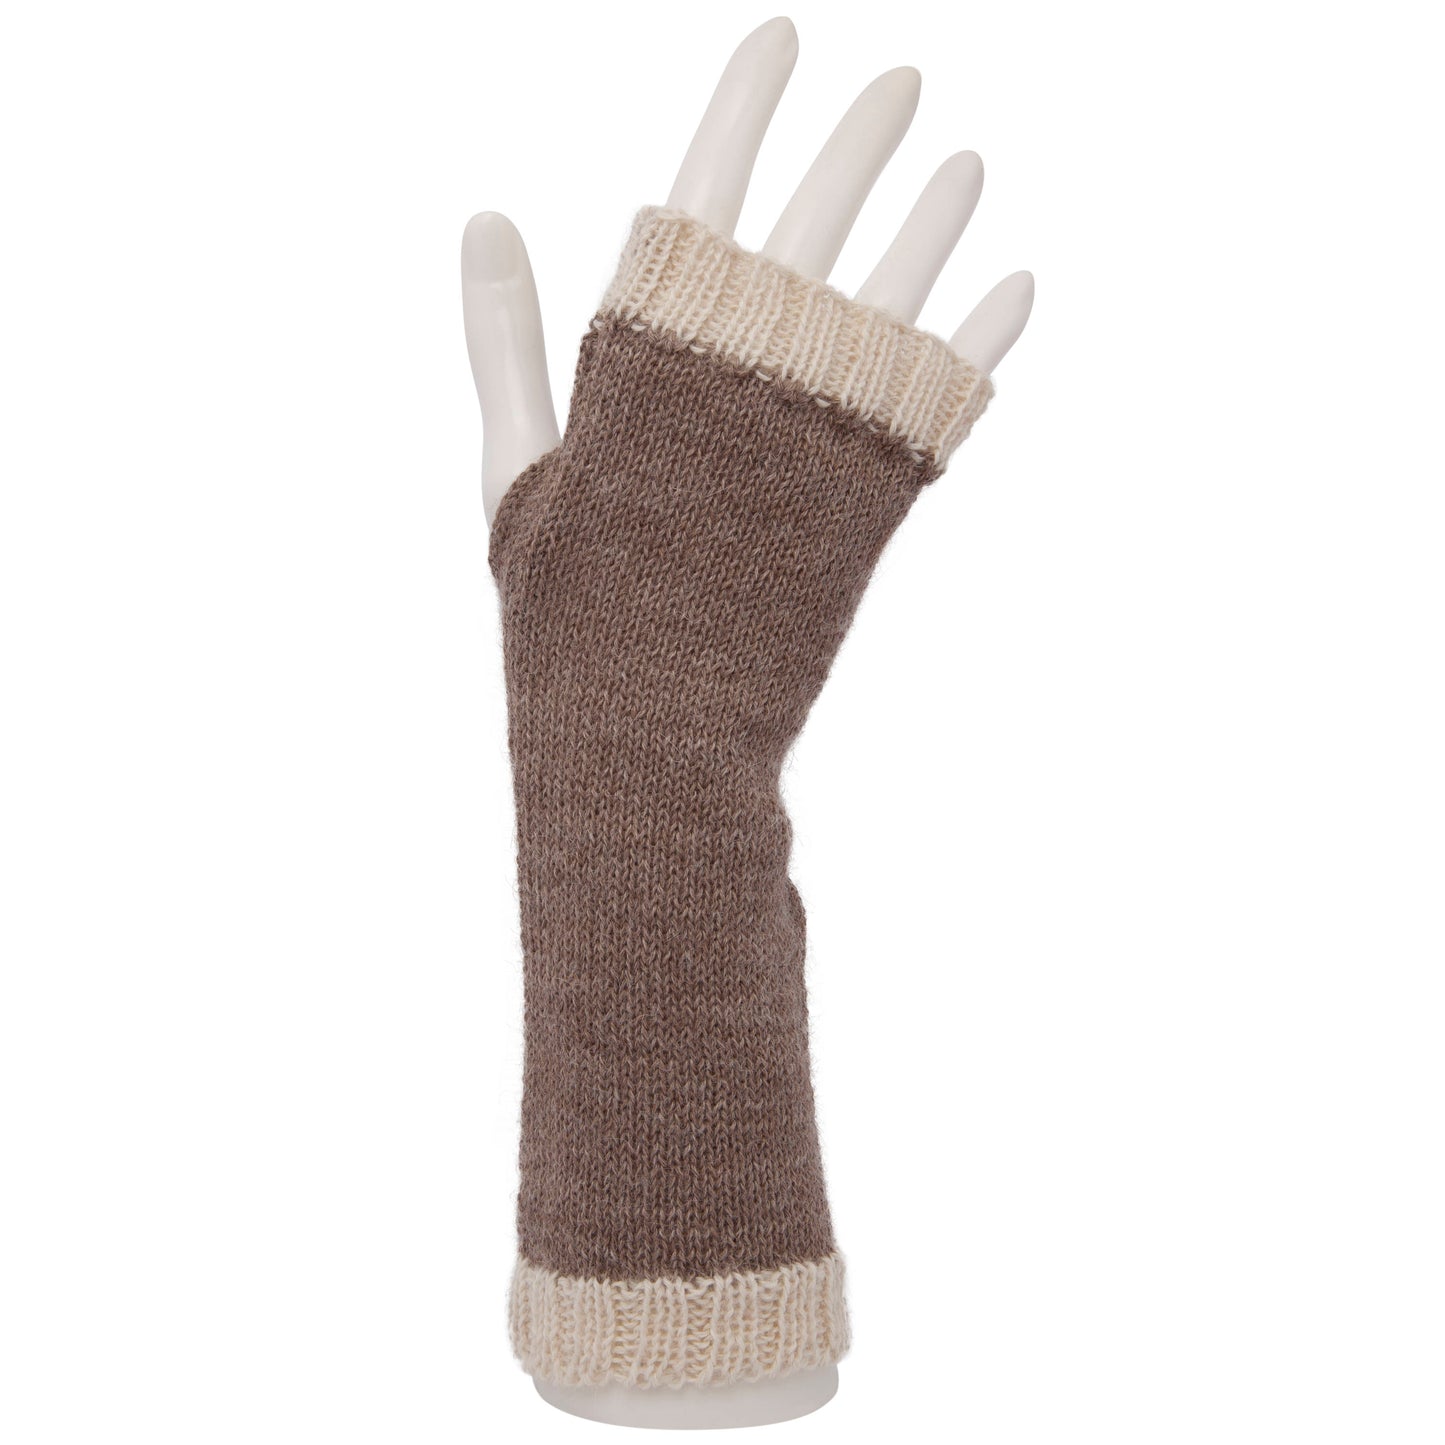 100% Alpaca Fingerless Mittens, Gloves, Wristwarmers, warm wool knit, Fair trade, ethical gift, eco friendly natural fibre, winter woollen